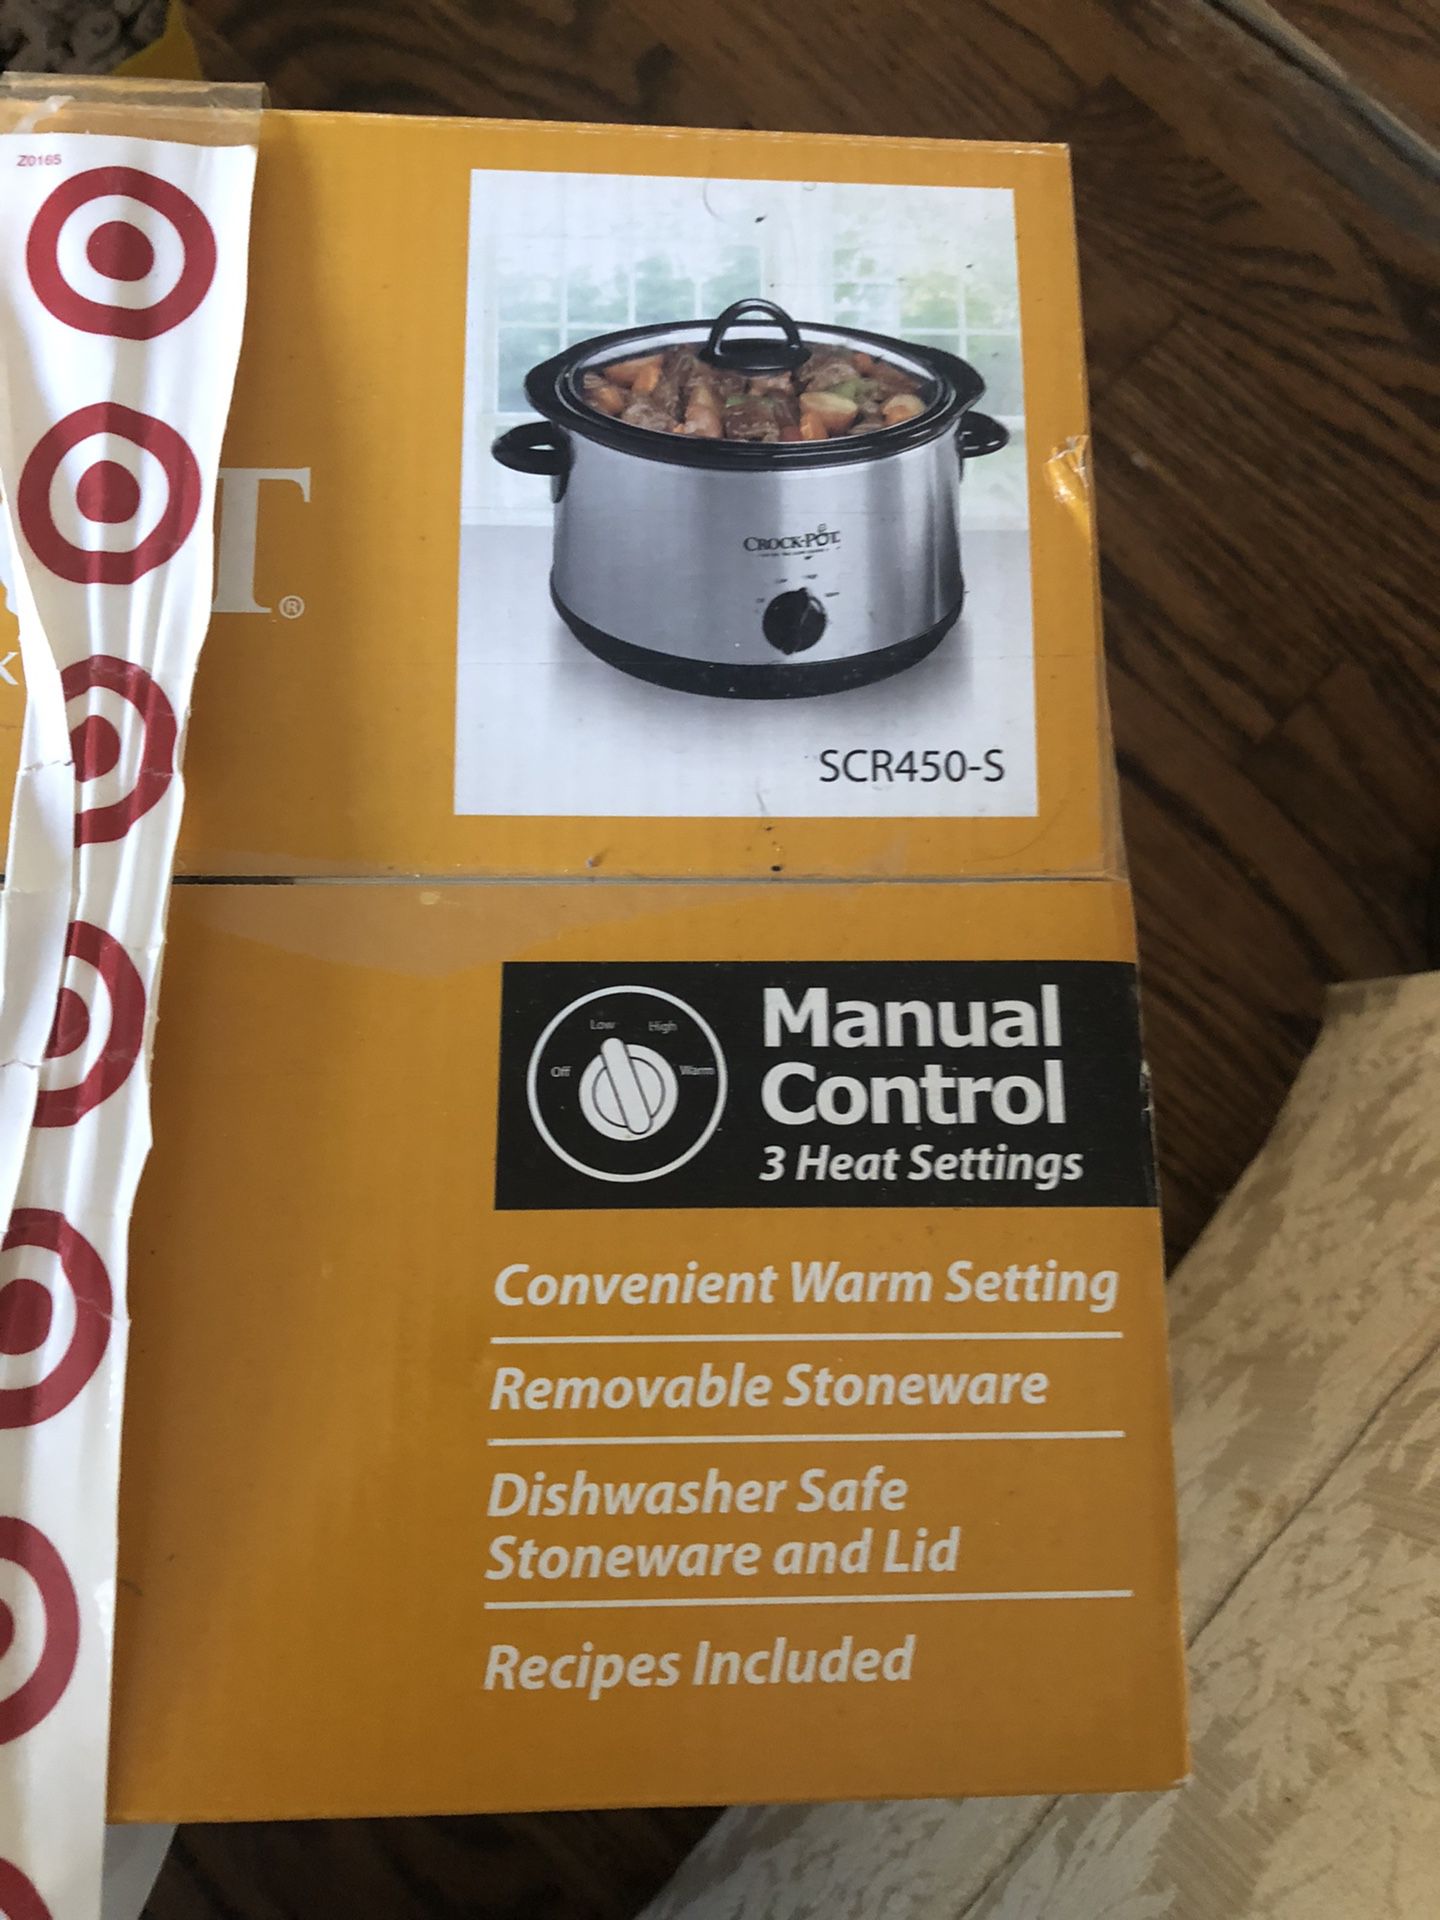 Crock Pot Manual Slow Cooker, 4.5qt